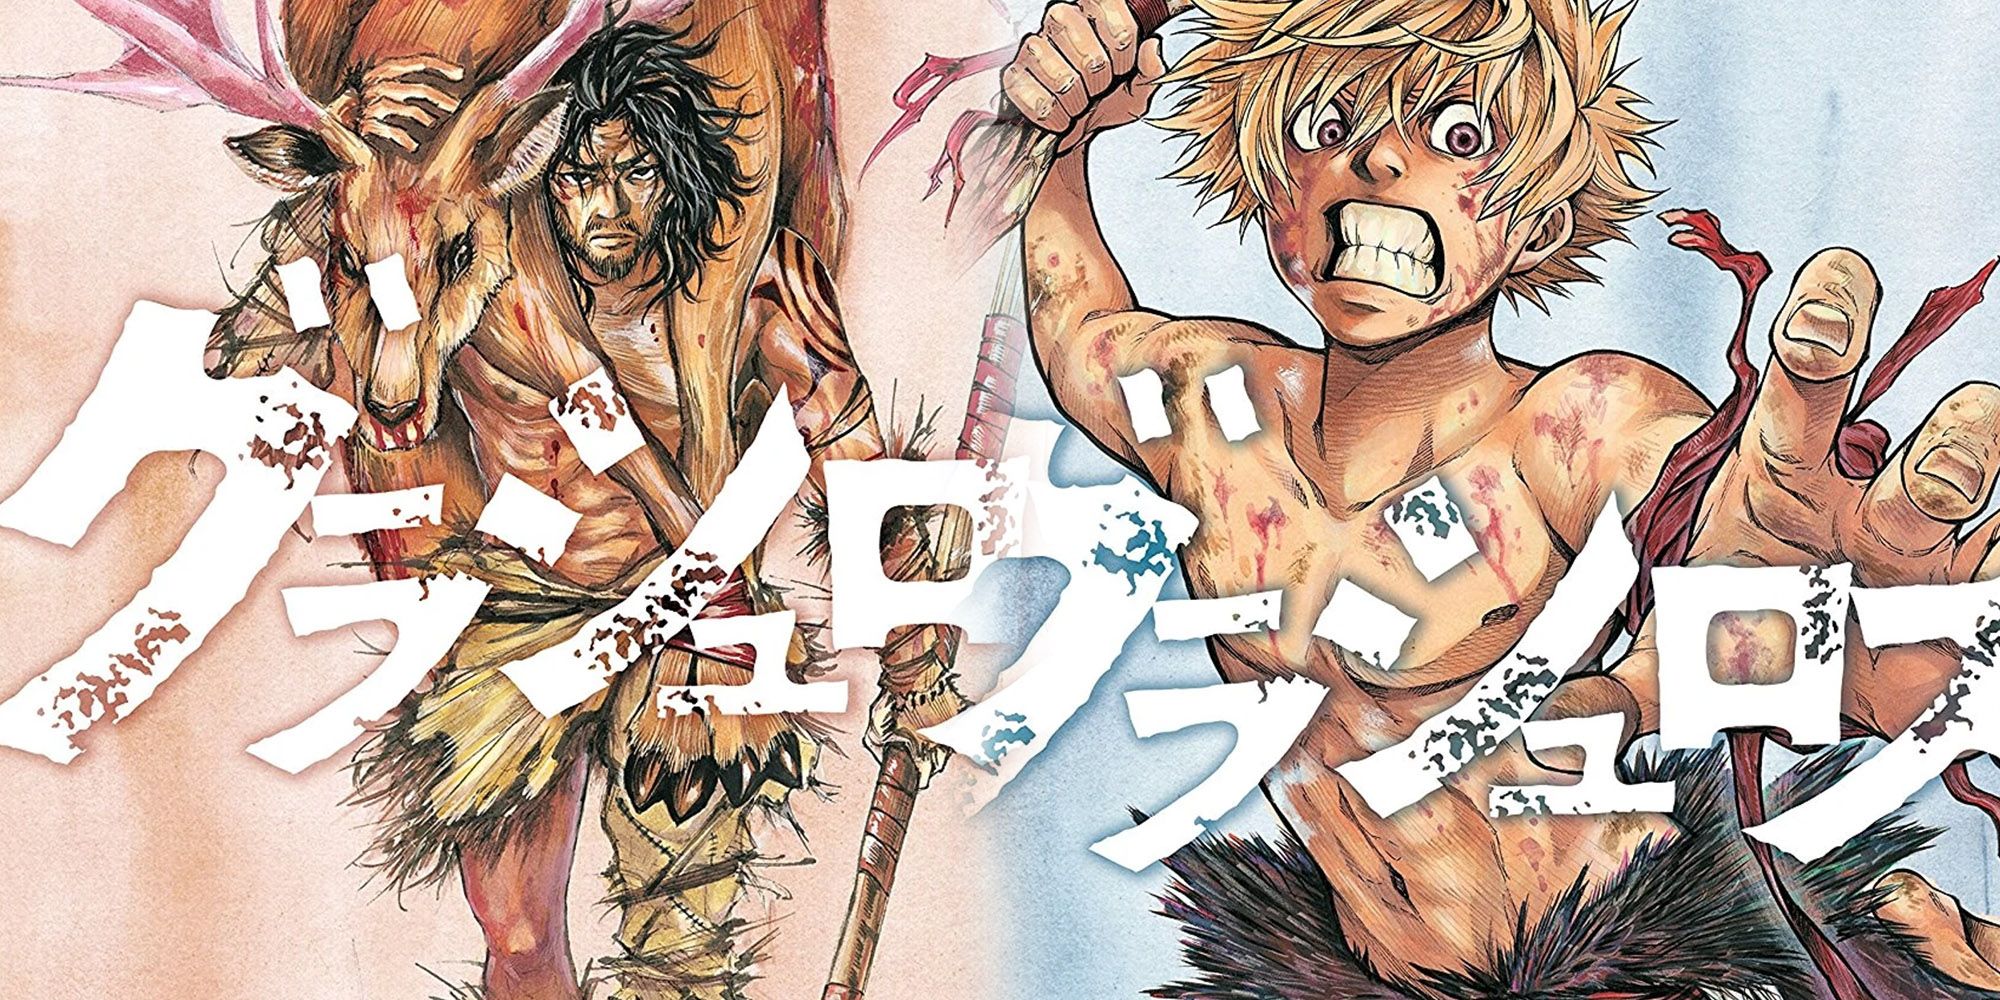 Grashros - Two Manga Volume Cover Arts Side By Side